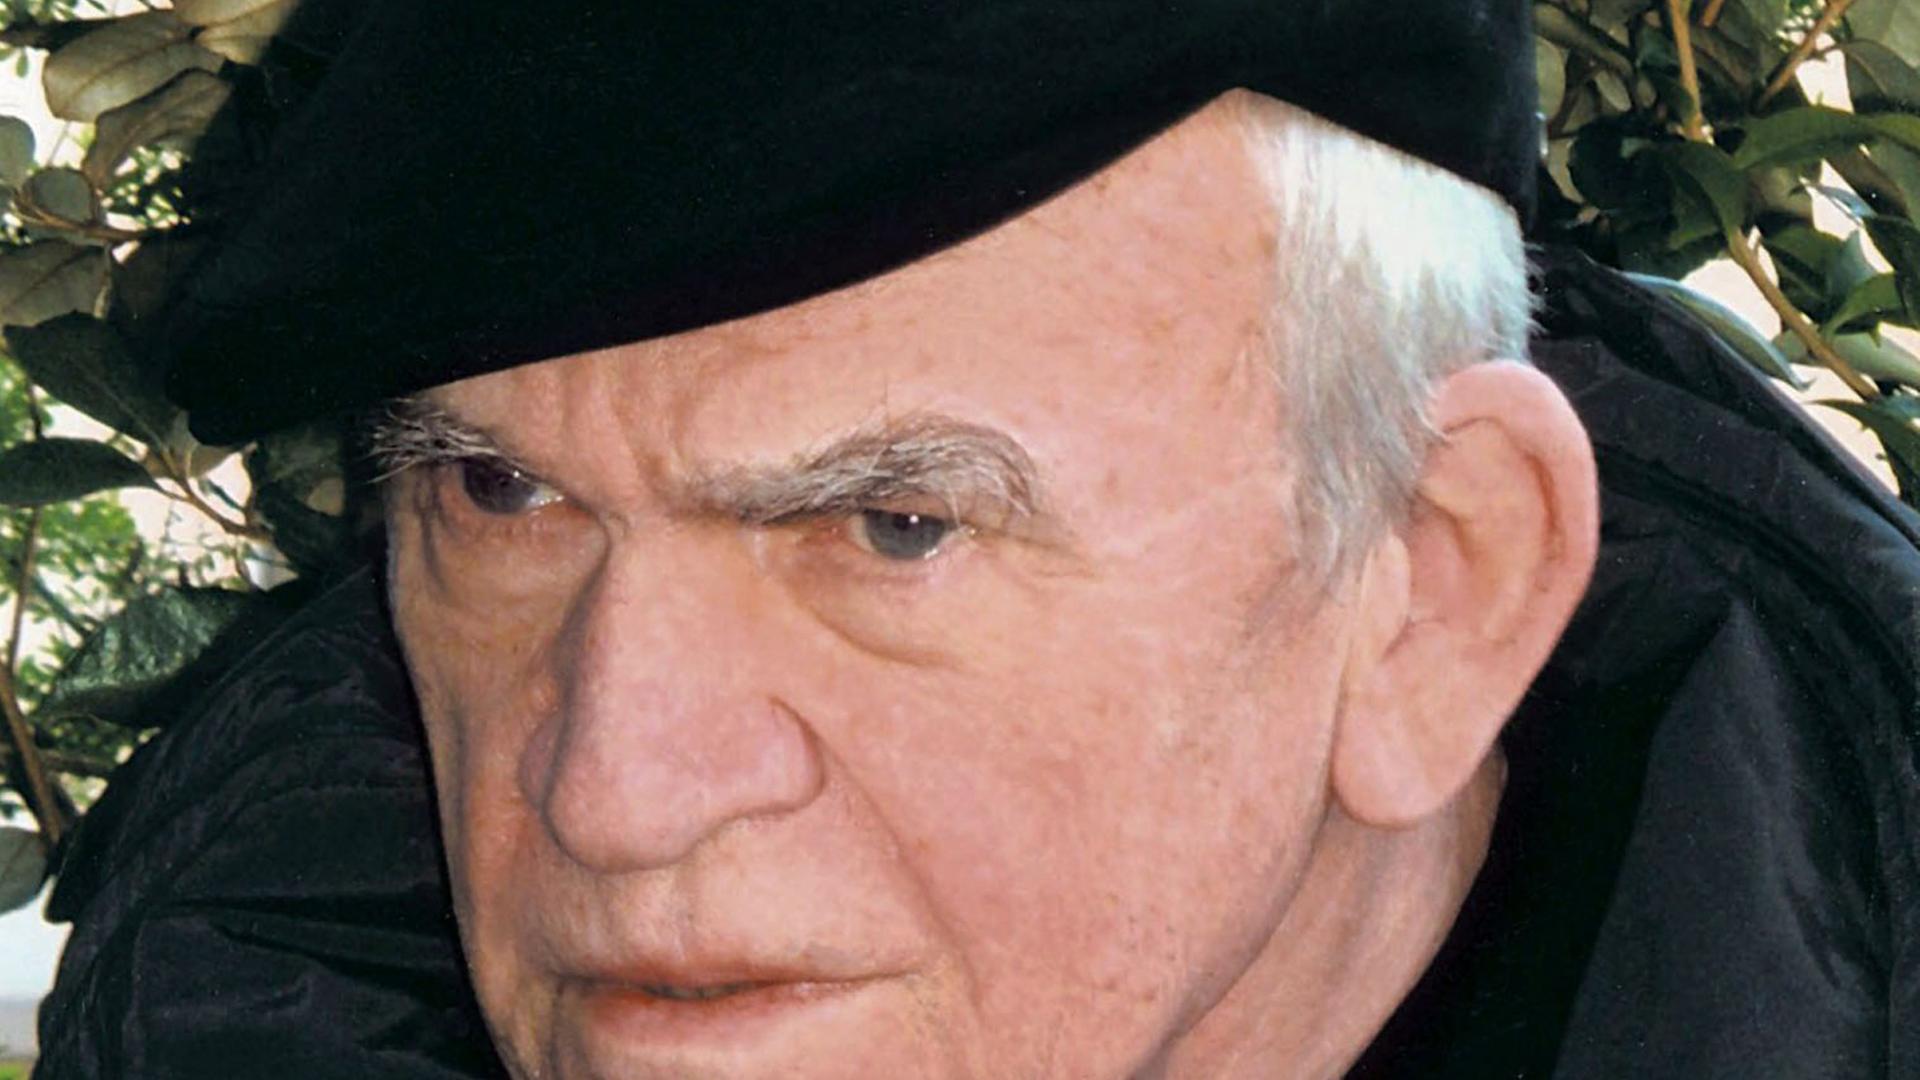 Der Schriftsteller Milan Kundera auf einem Bild von 2005